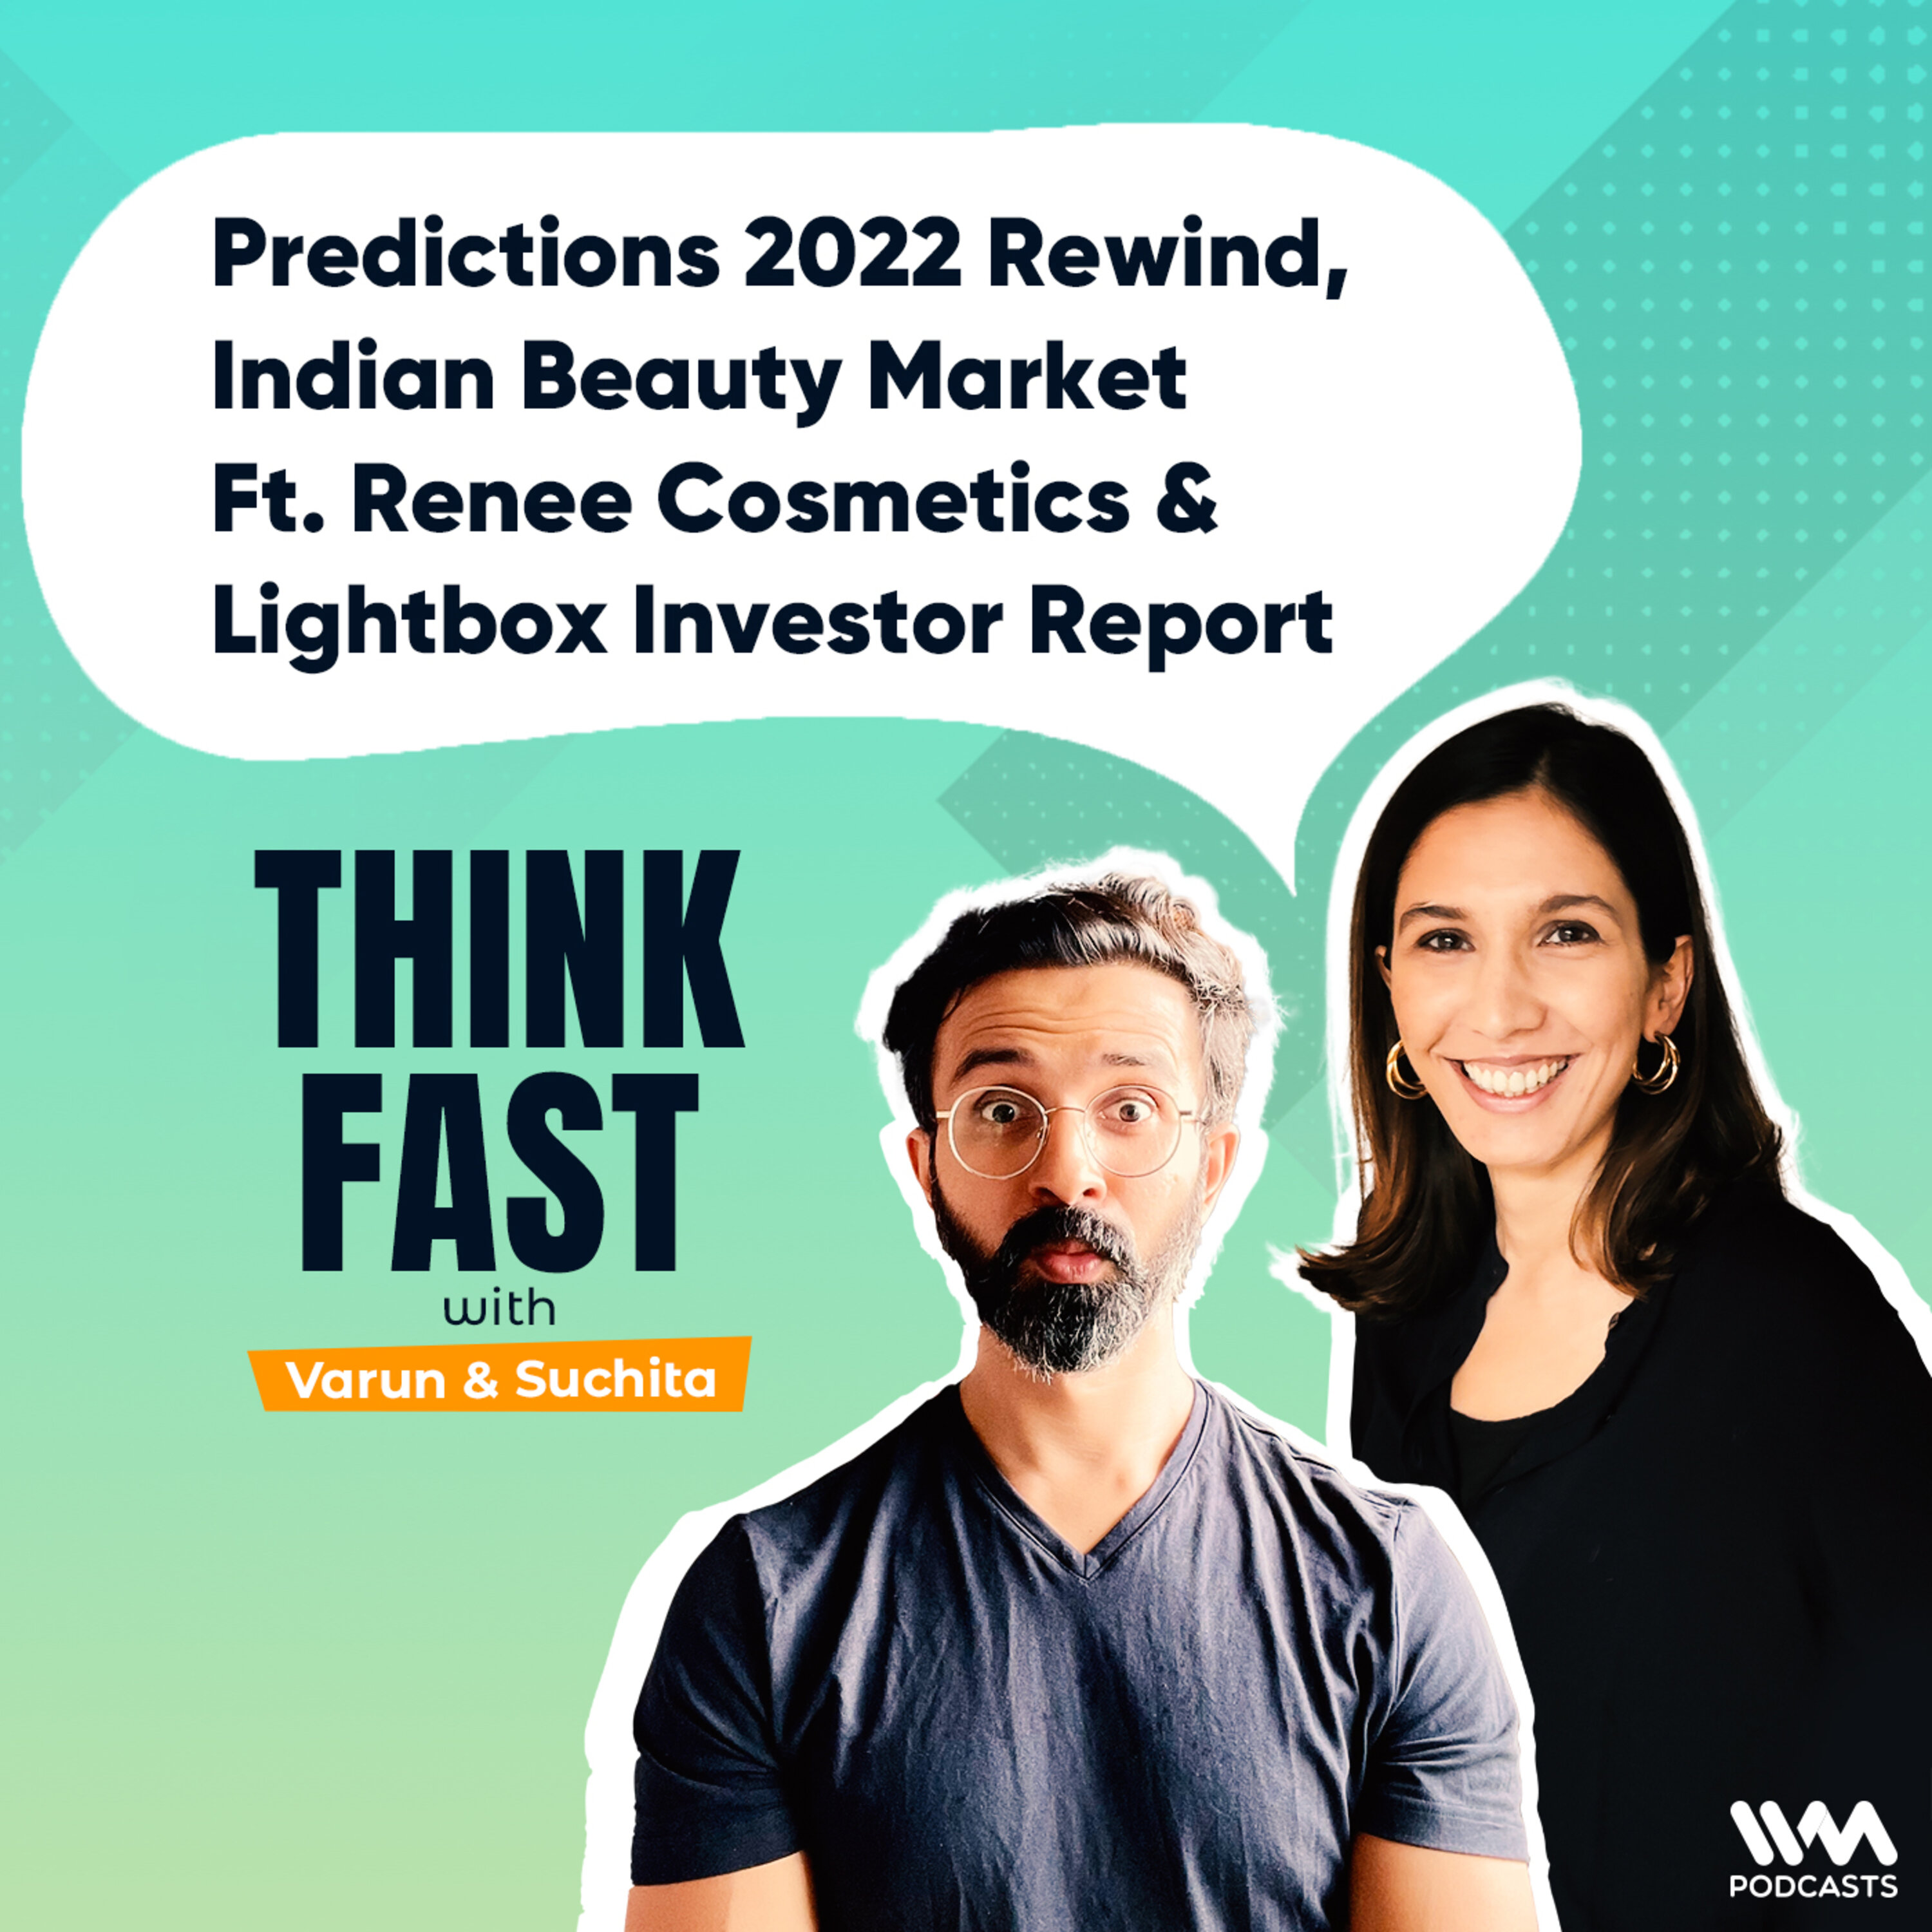 Predictions 2022 Rewind, Indian Beauty Market ft. Renee Cosmetics & Lightbox Investor Report